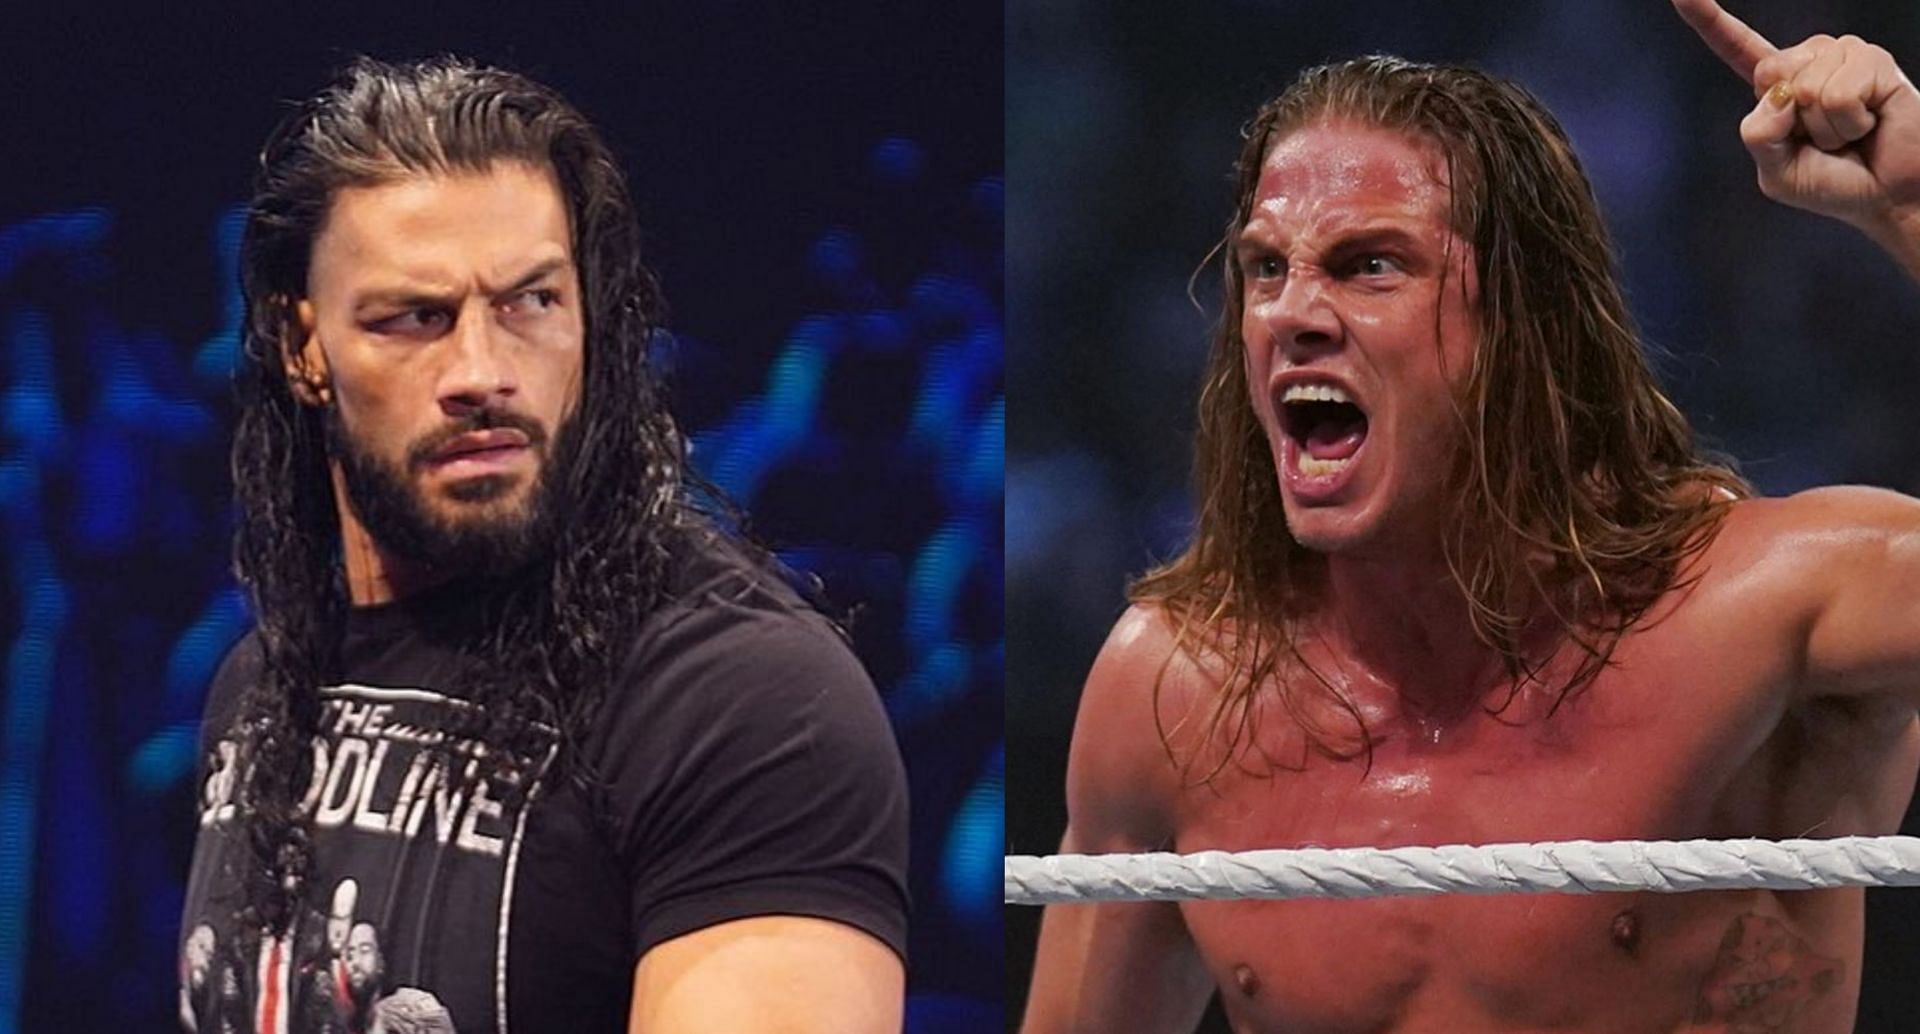 WWE ने रोमन रेंस और रिडल के मैच में बड़ी शर्त को जोड़ा है